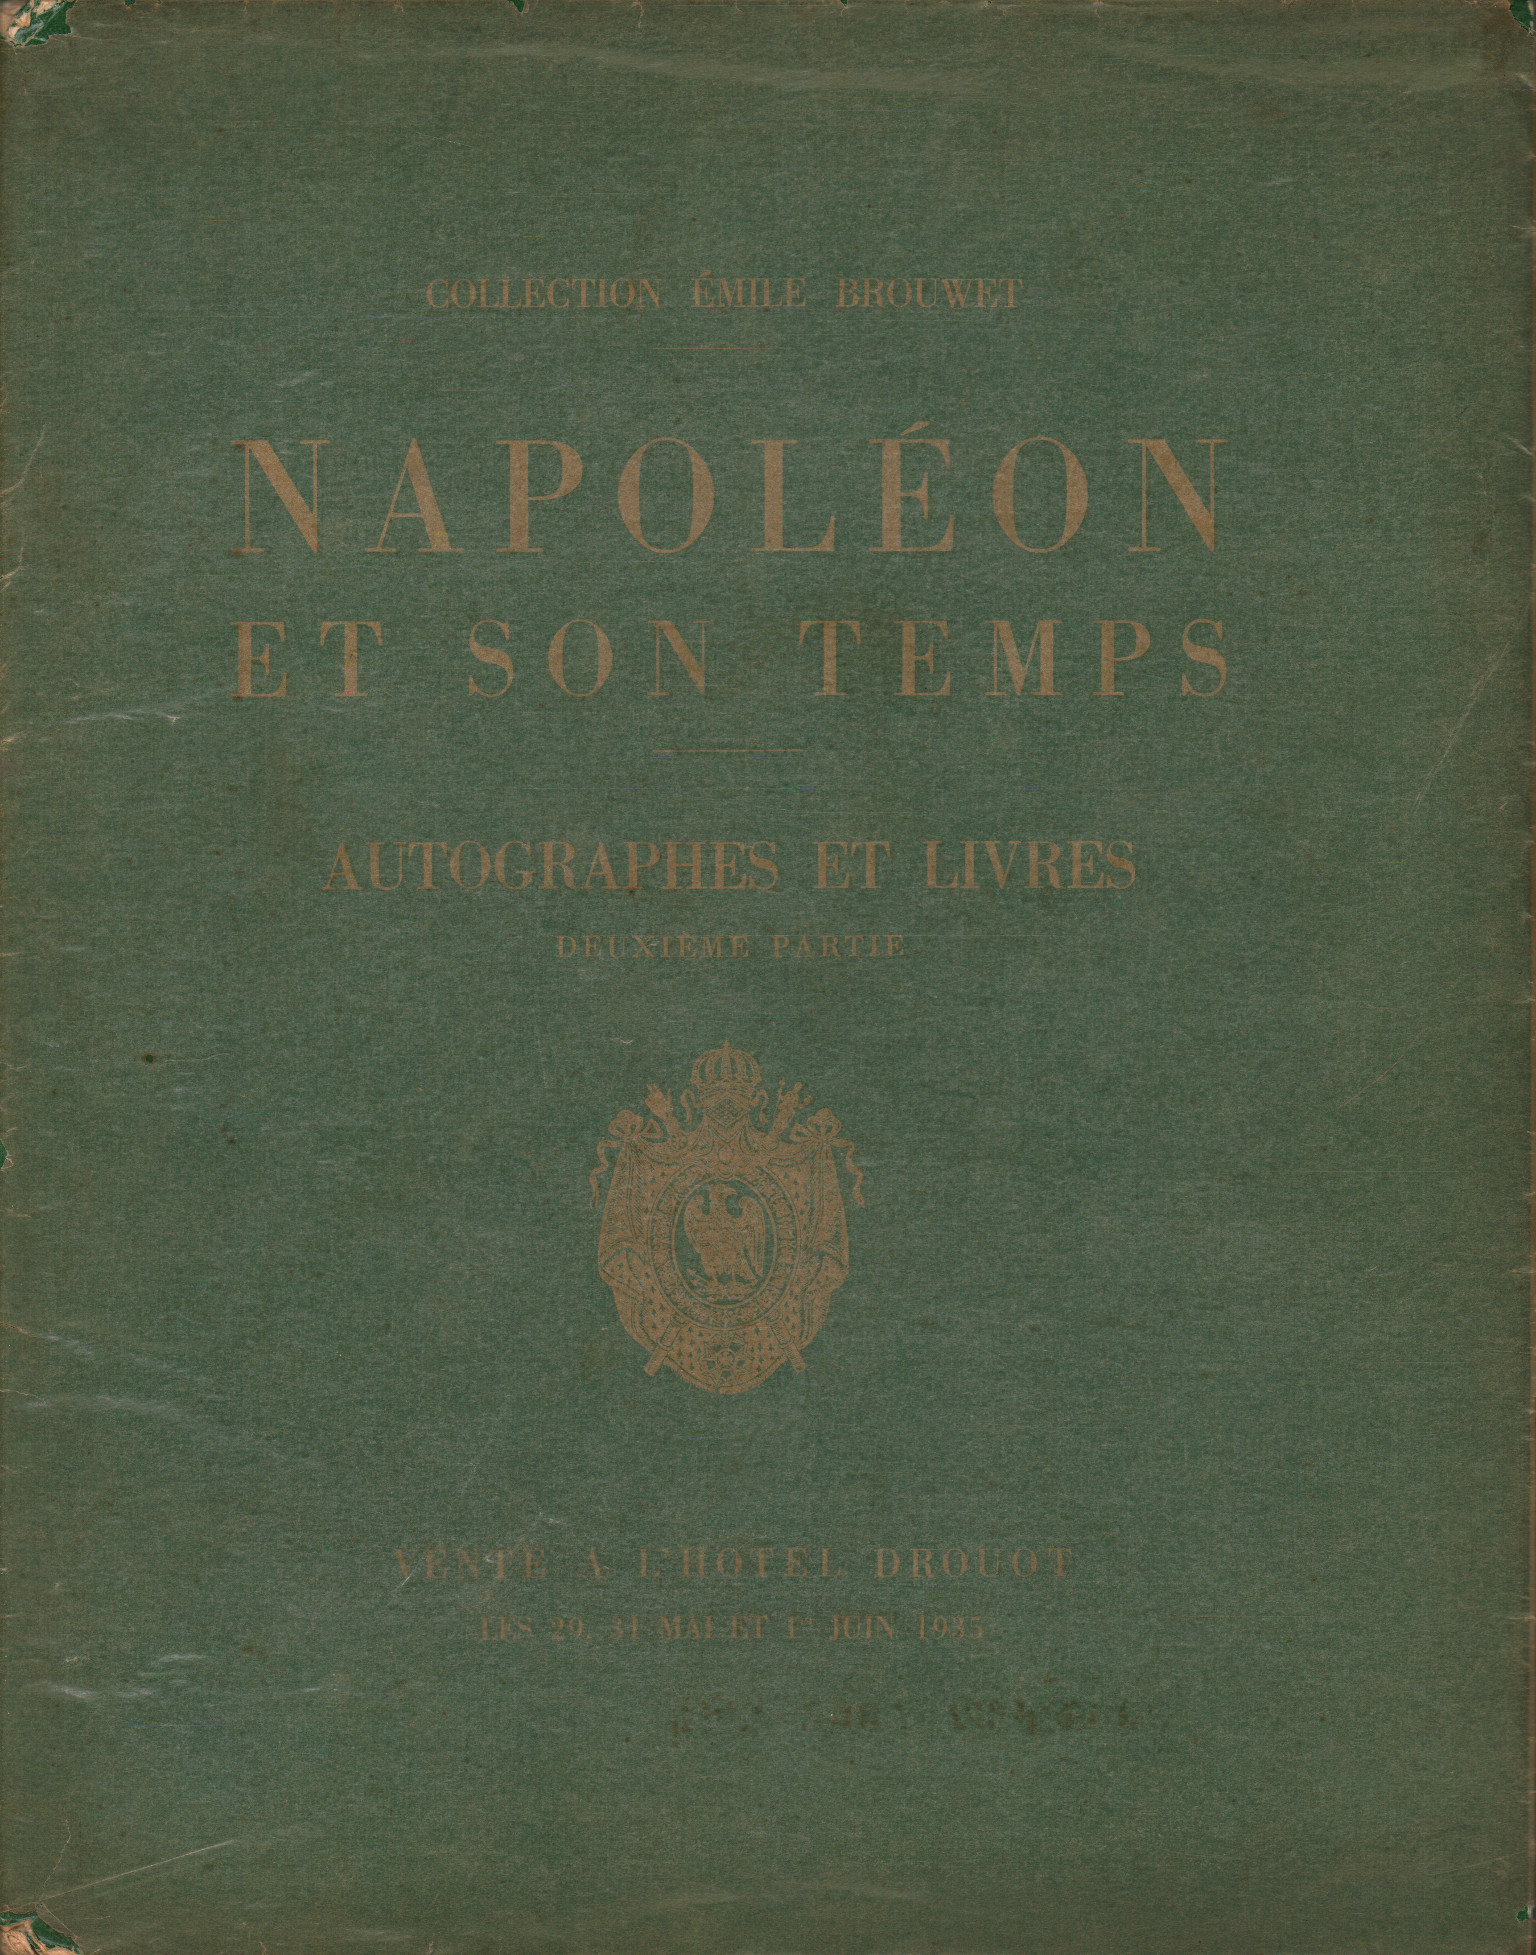 Napoleon und seine Gemüter. Katalog de